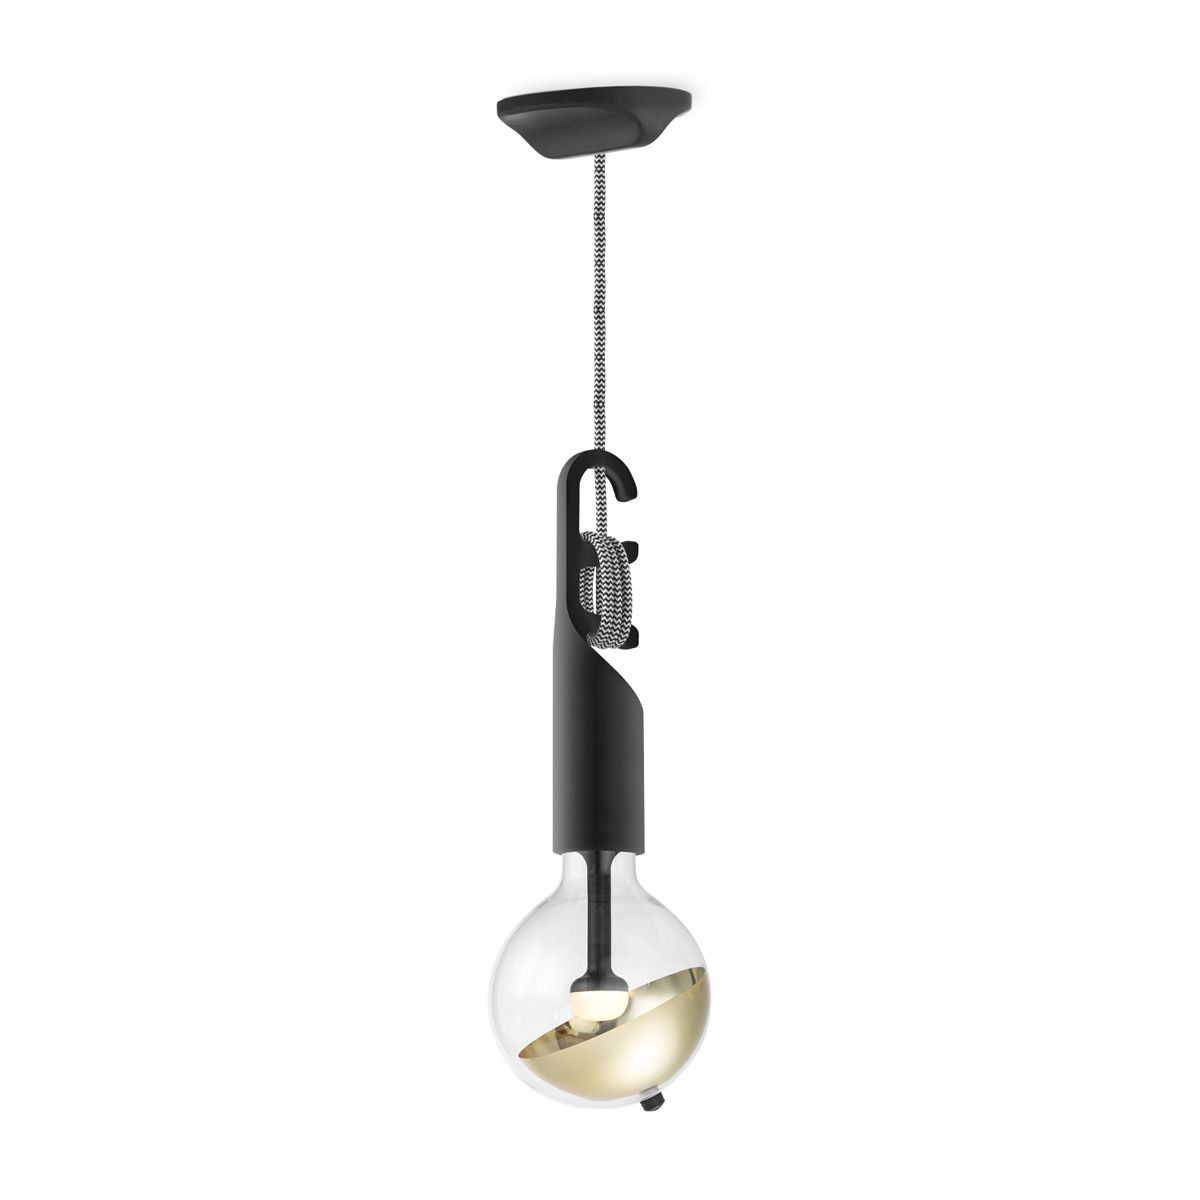 Move Me hanglamp Twist - zwart / Sphere 5,5W - goud